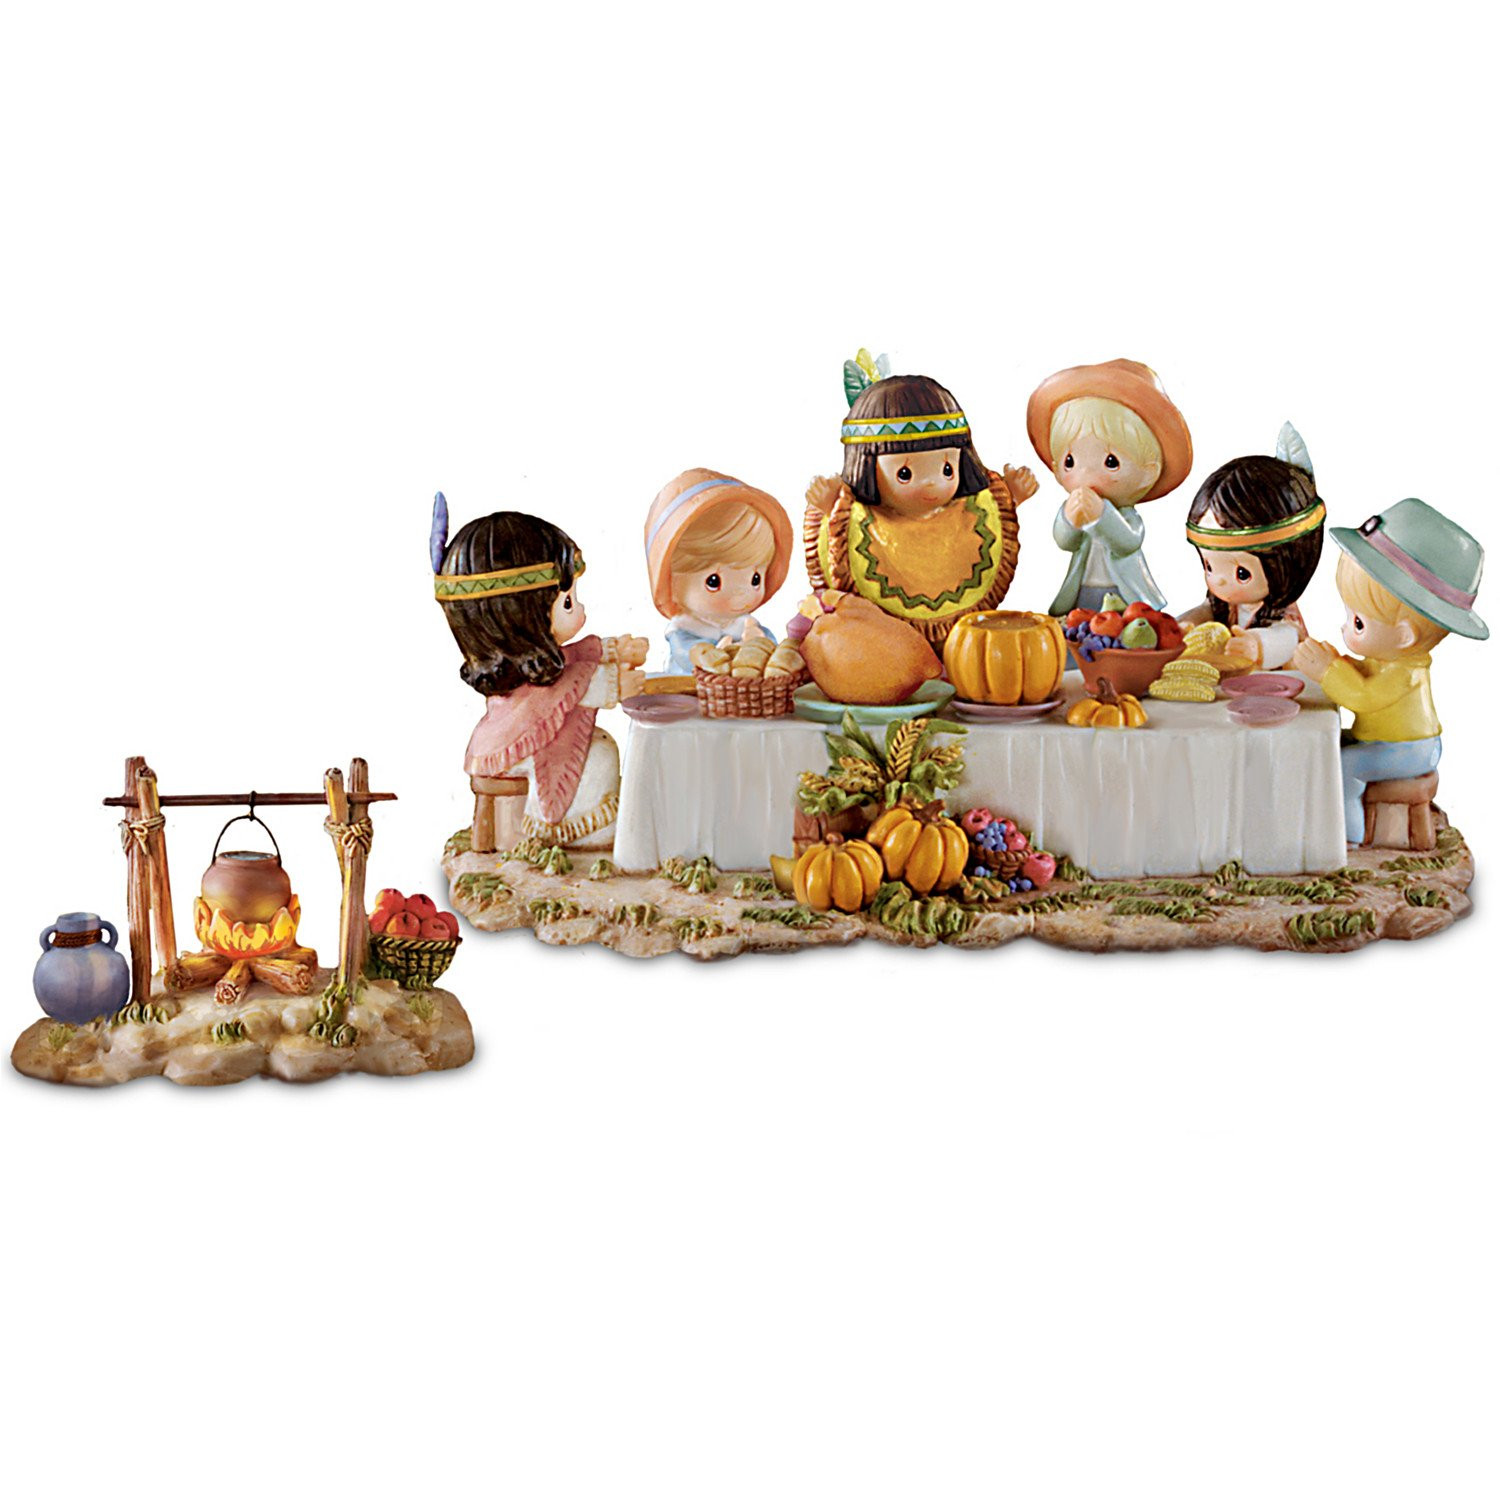 Turkey Figurines Thanksgiving
 Thanksgiving Pilgrim Indian Children Figurines